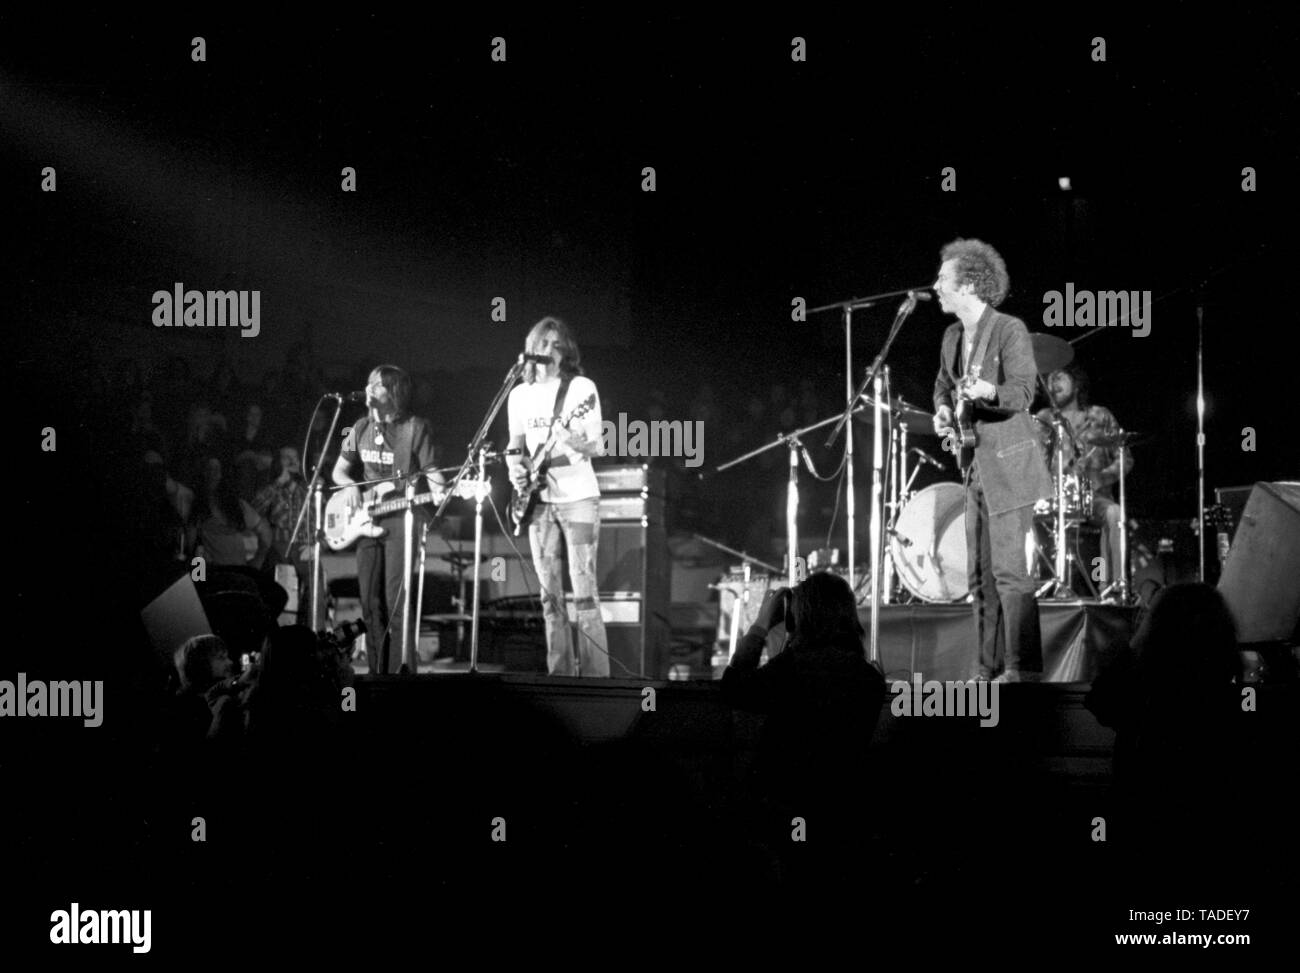 Amsterdam, Niederlande - 1. Januar: Amerikanische Gruppe Adler live auf der Bühne im Concertgebouw Amsterdam, Niederlande im Jahr 1972 durchführen. Nach rechts: Randy Meisner, Glenn Frey und Bernie Leadon Links. (Foto Gijsbert Hanekroot) Stockfoto